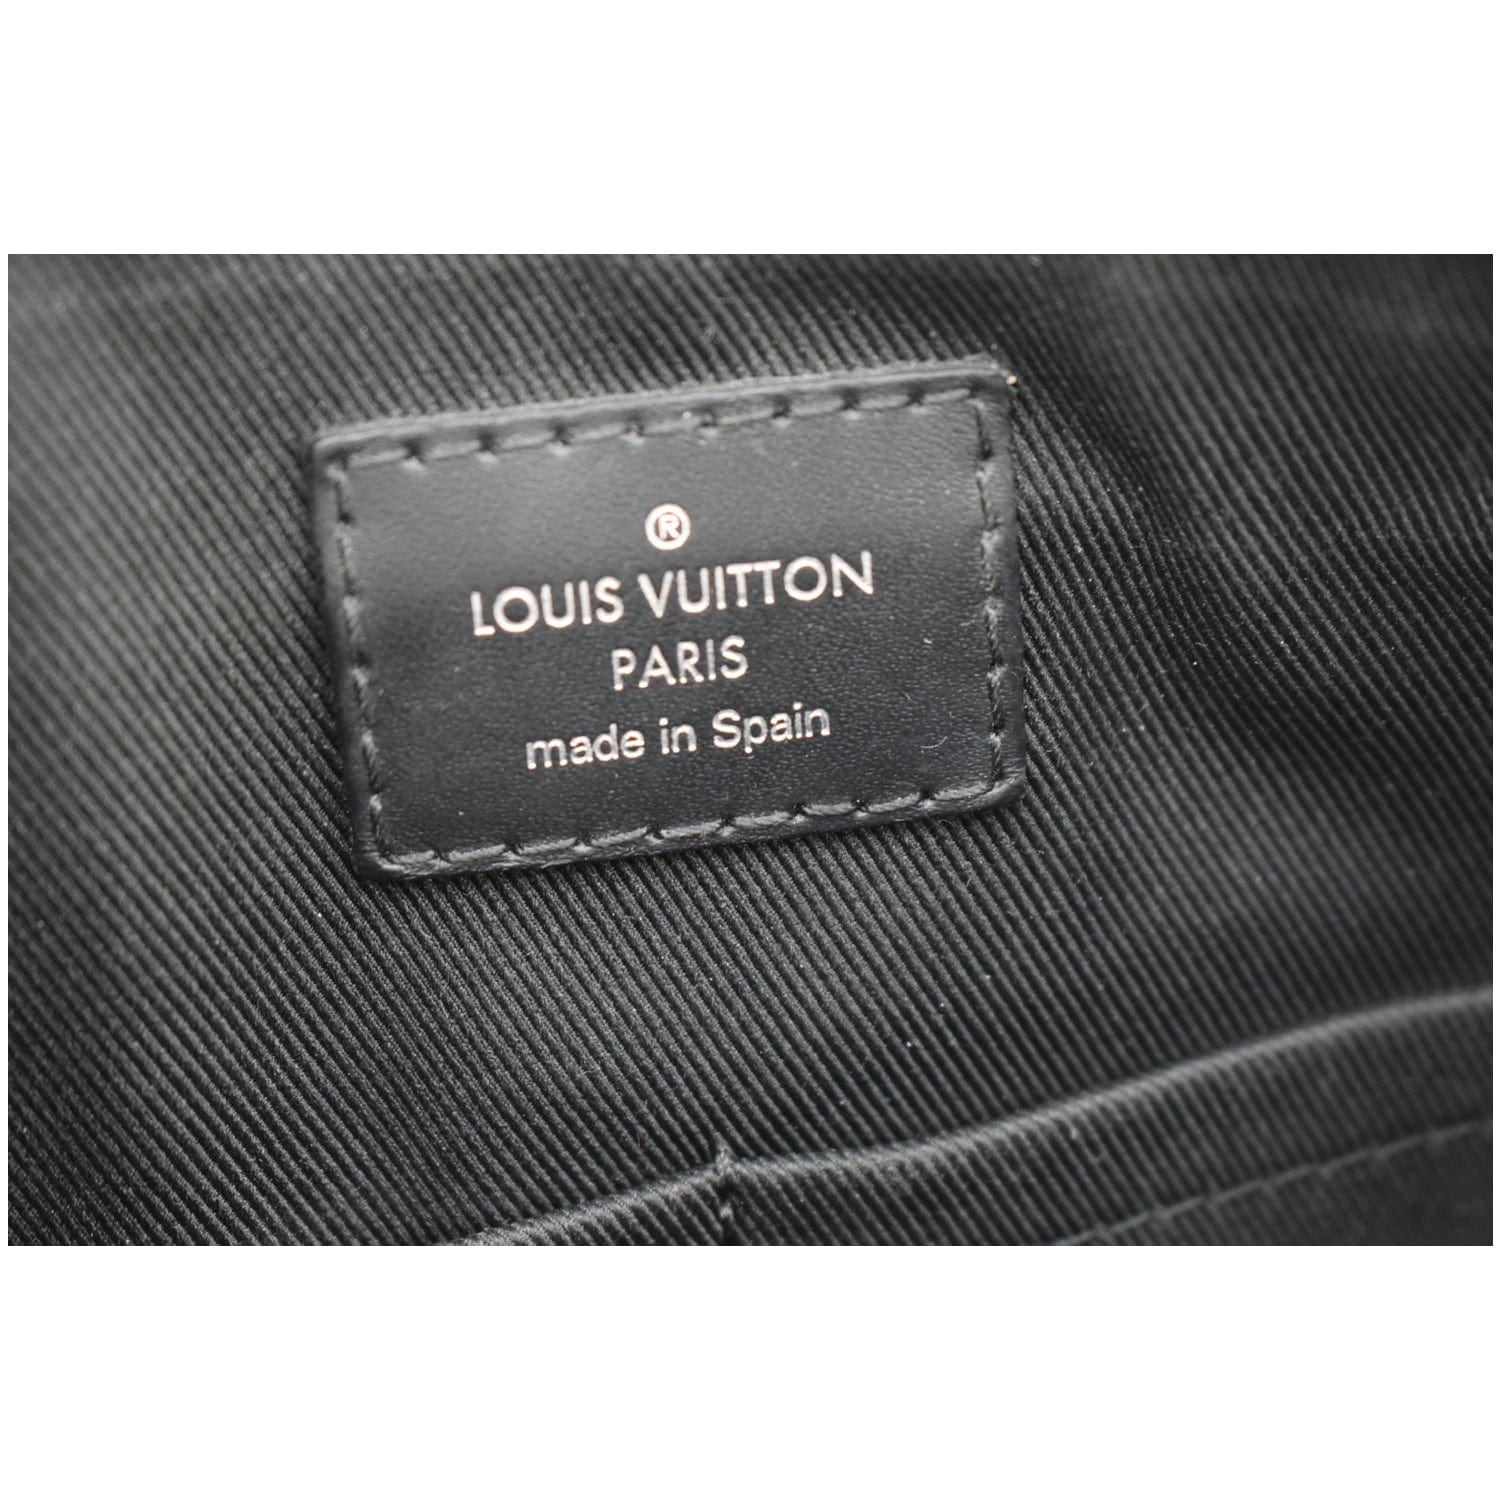 LOUIS VUITTON Louis Vuitton Mick PM Shoulder Bag N40003 Damier Graphite  Canvas Black Gray Silver Hardware Messenger